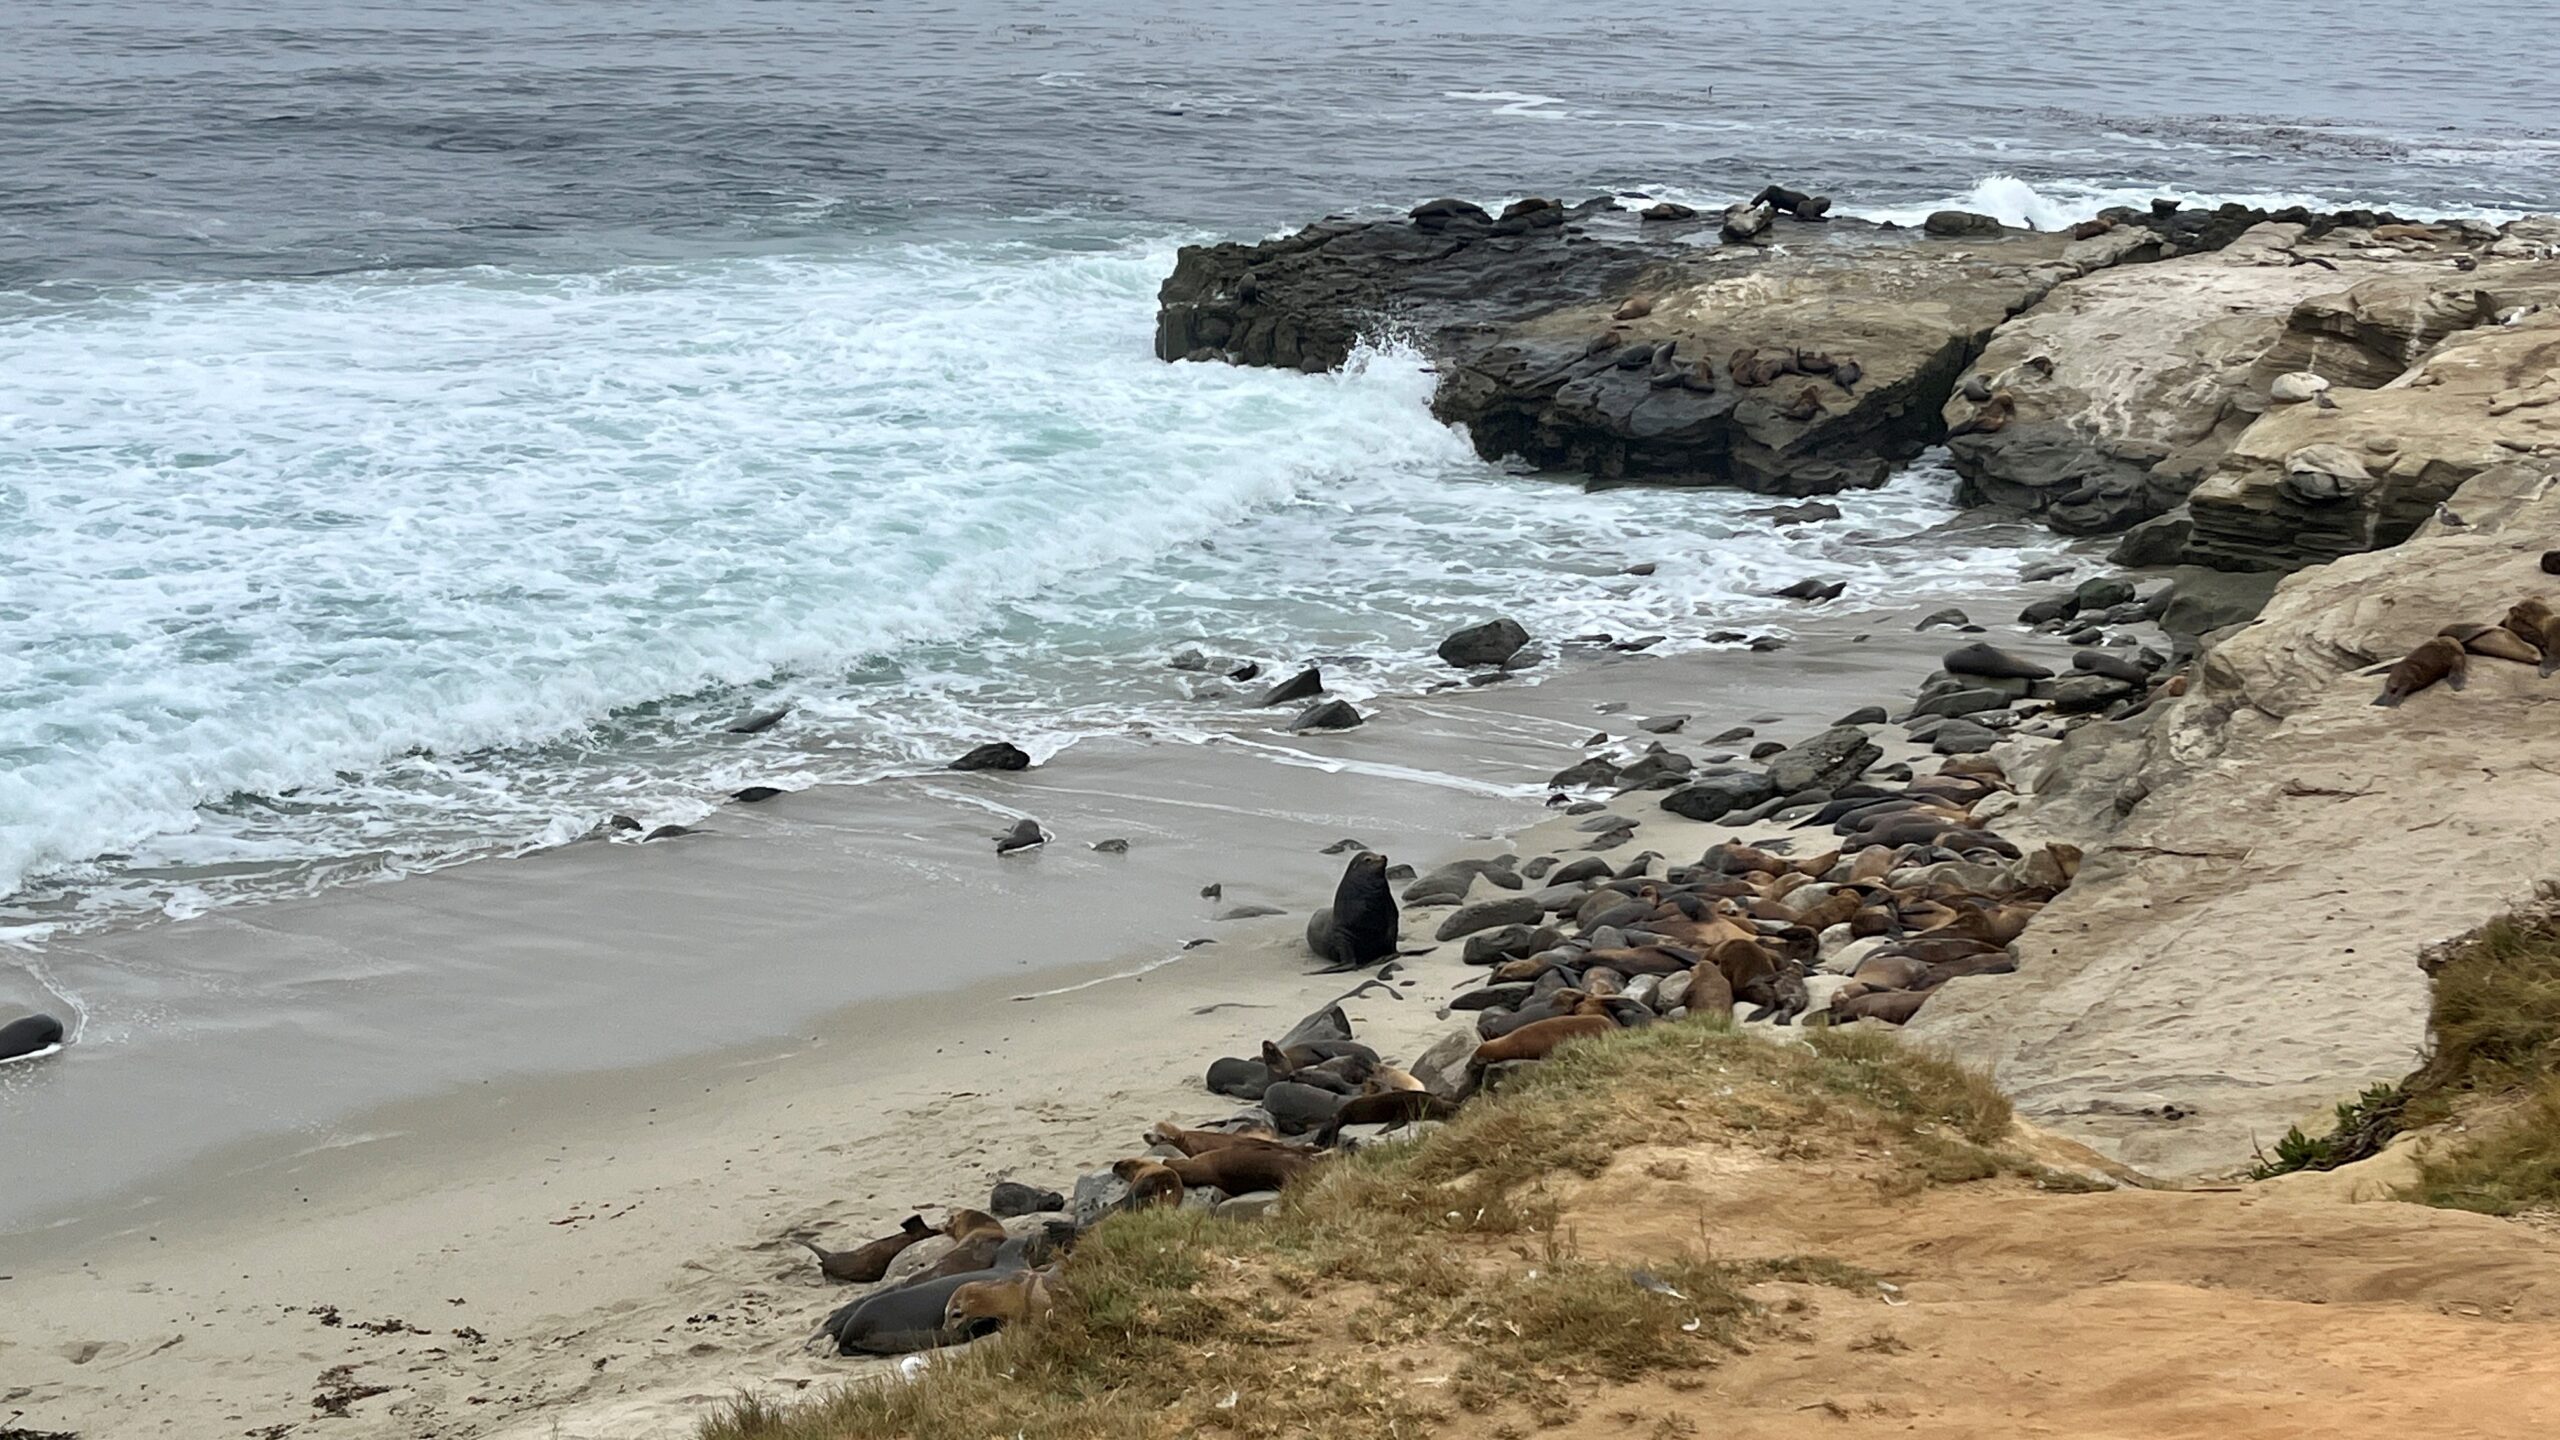 Sea lions in La Jolla, California